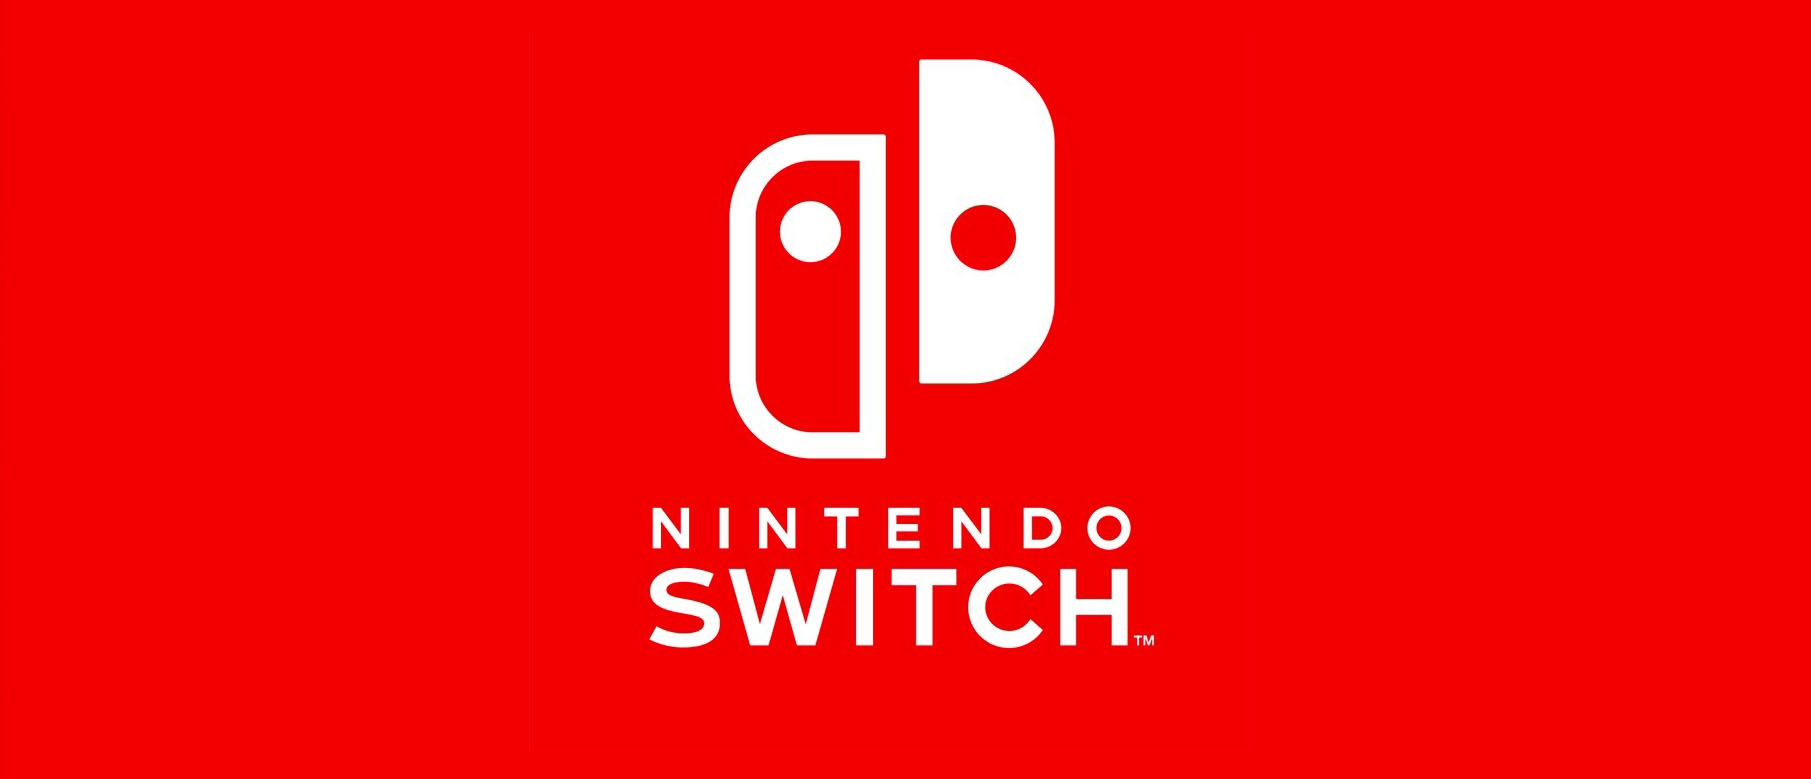 Изображение к Ад перфекциониста - логотип Nintendo Switch не симметричен